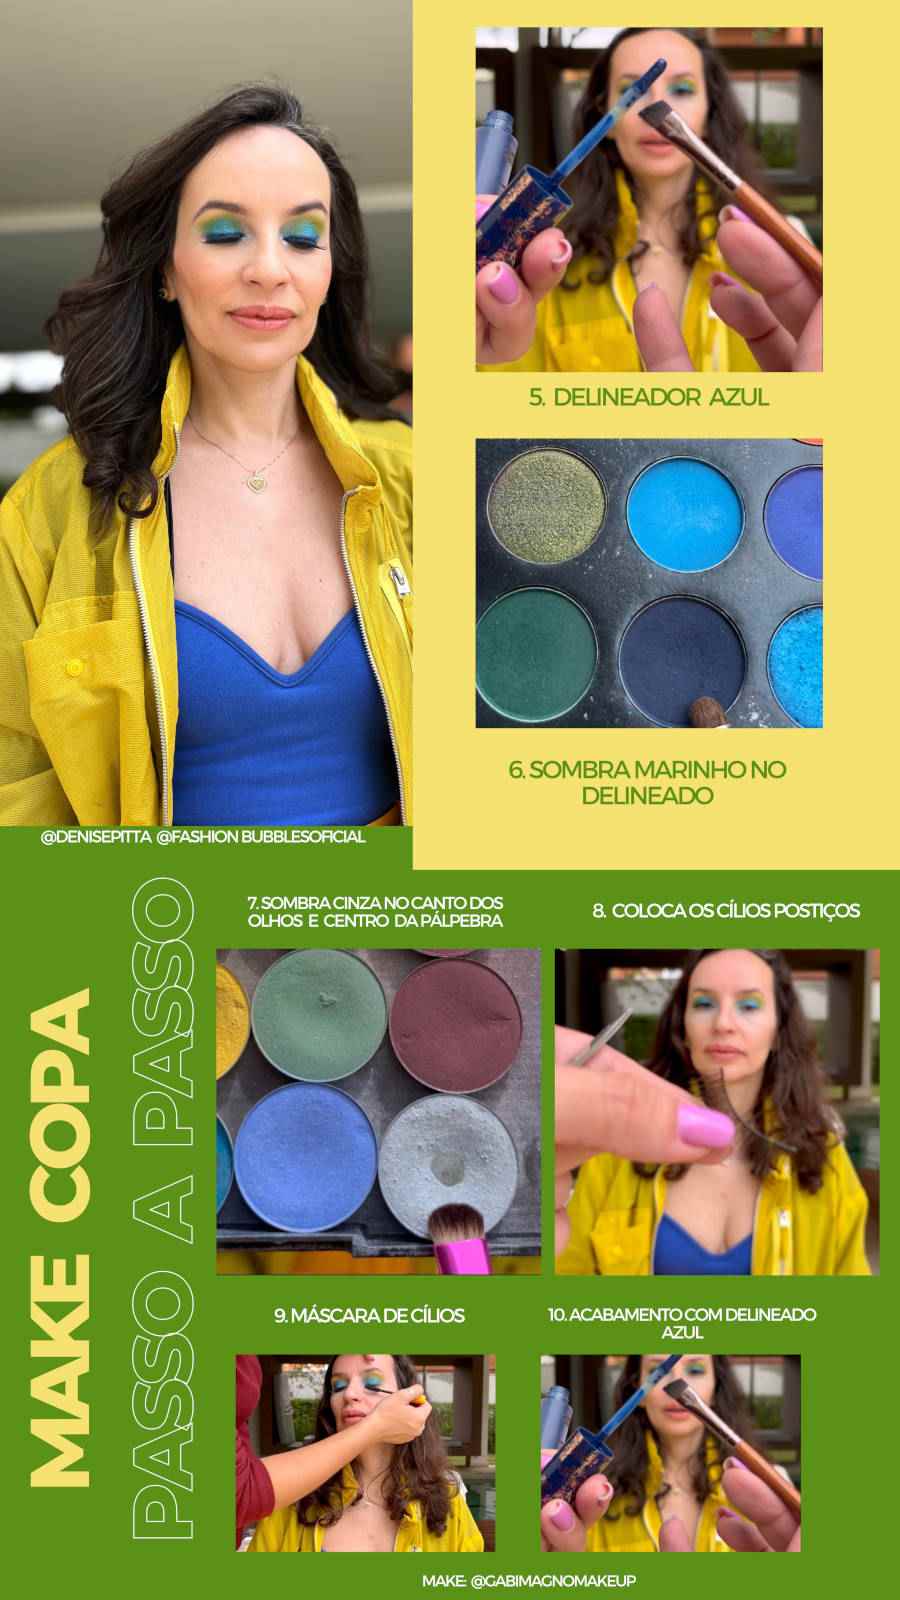 Ilustração com as cores verdes e amarelas com fotos de Denise Pitta e sendo maquiada e fotos de maquiagens como paleta de sombras em tons de azul, roxo, verde e cinza, máscara de cílios e caneta delineadora azul.